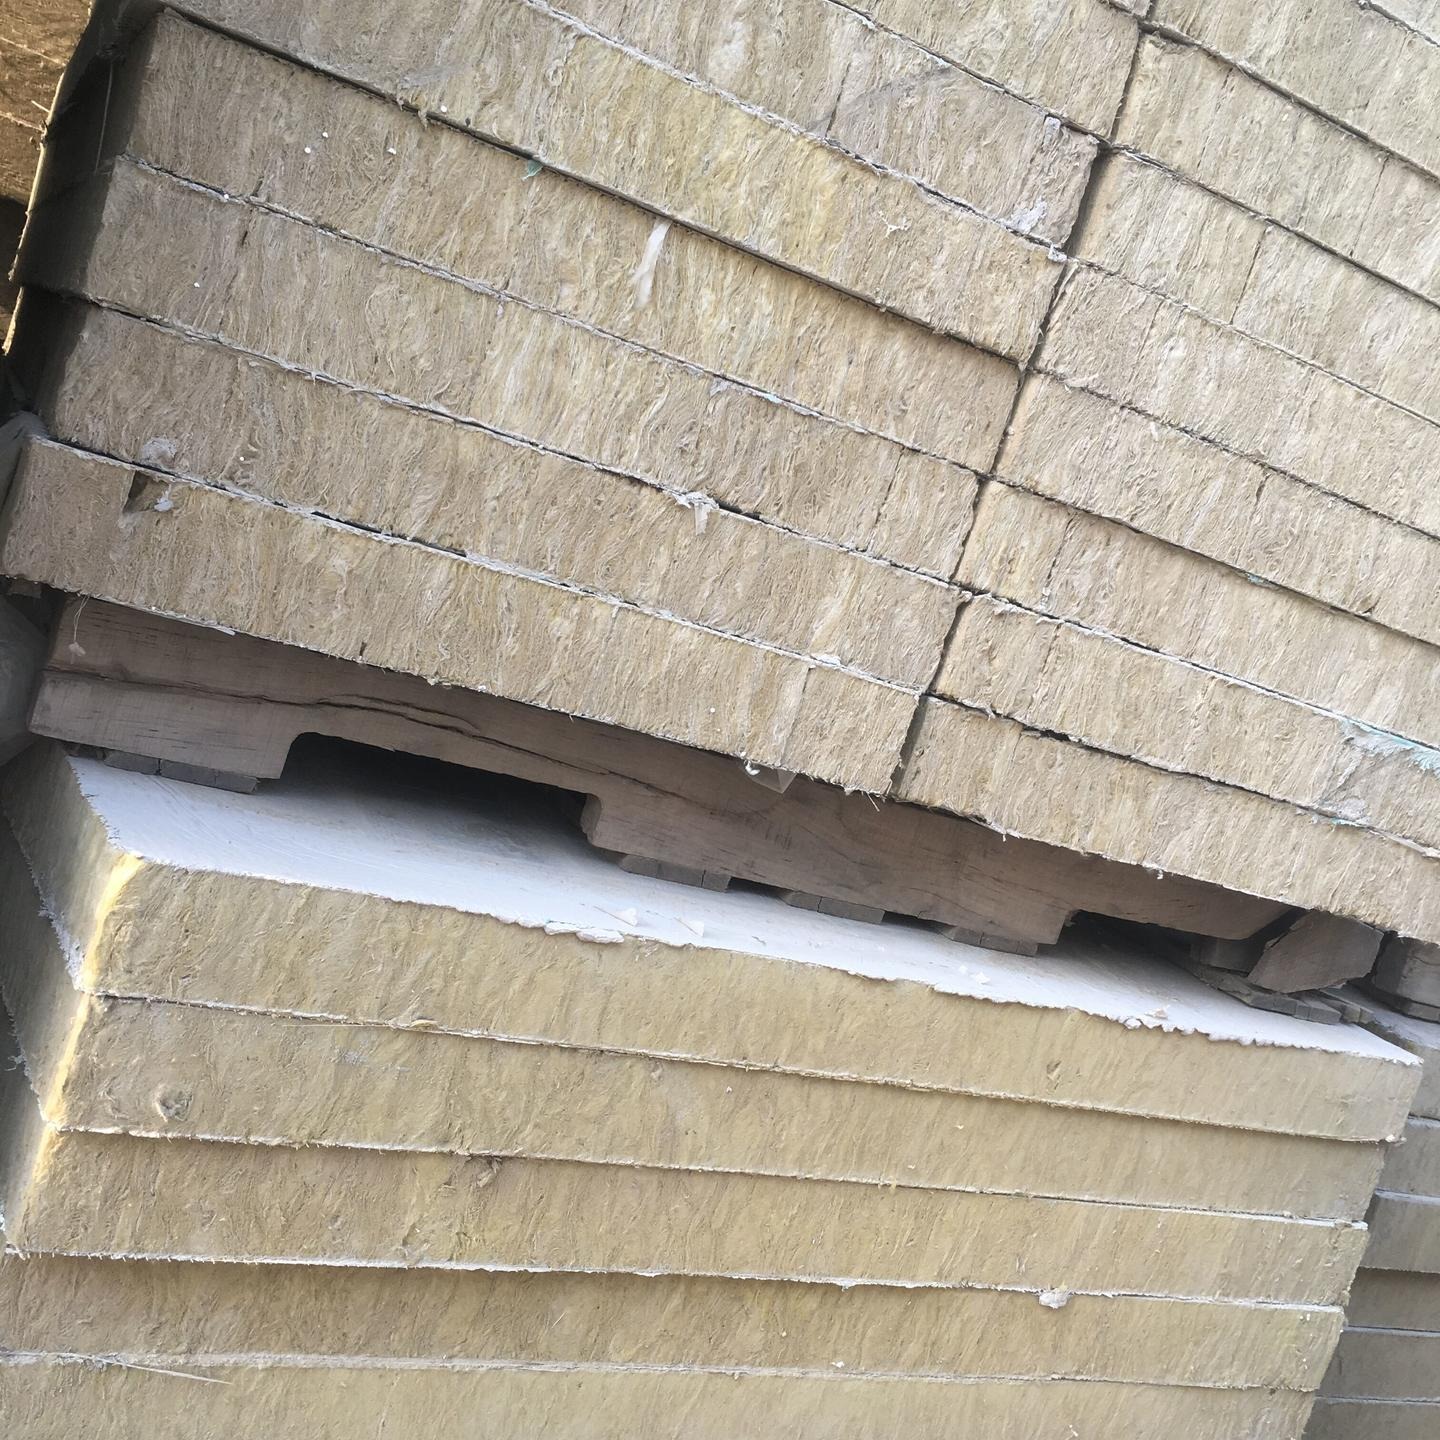 岩棉复合板厂家直销外墙砂浆岩棉复合板 竖丝增强型岩棉复合板 外墙玄武岩岩棉复合板 砂浆纸岩棉复合板 质量保证 价格优惠